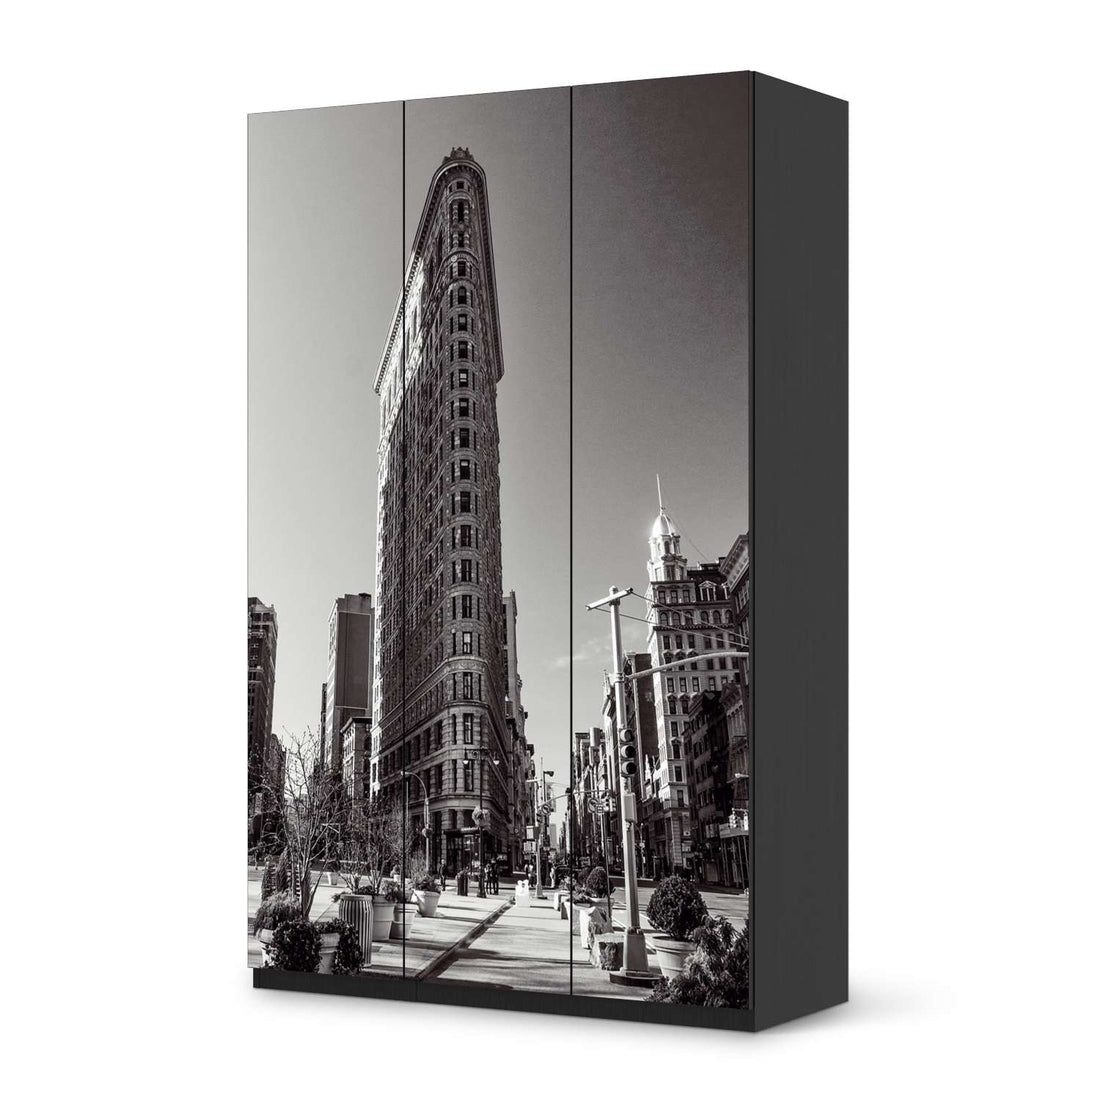 Selbstklebende Folie Manhattan - IKEA Pax Schrank 236 cm Höhe - 3 Türen - schwarz